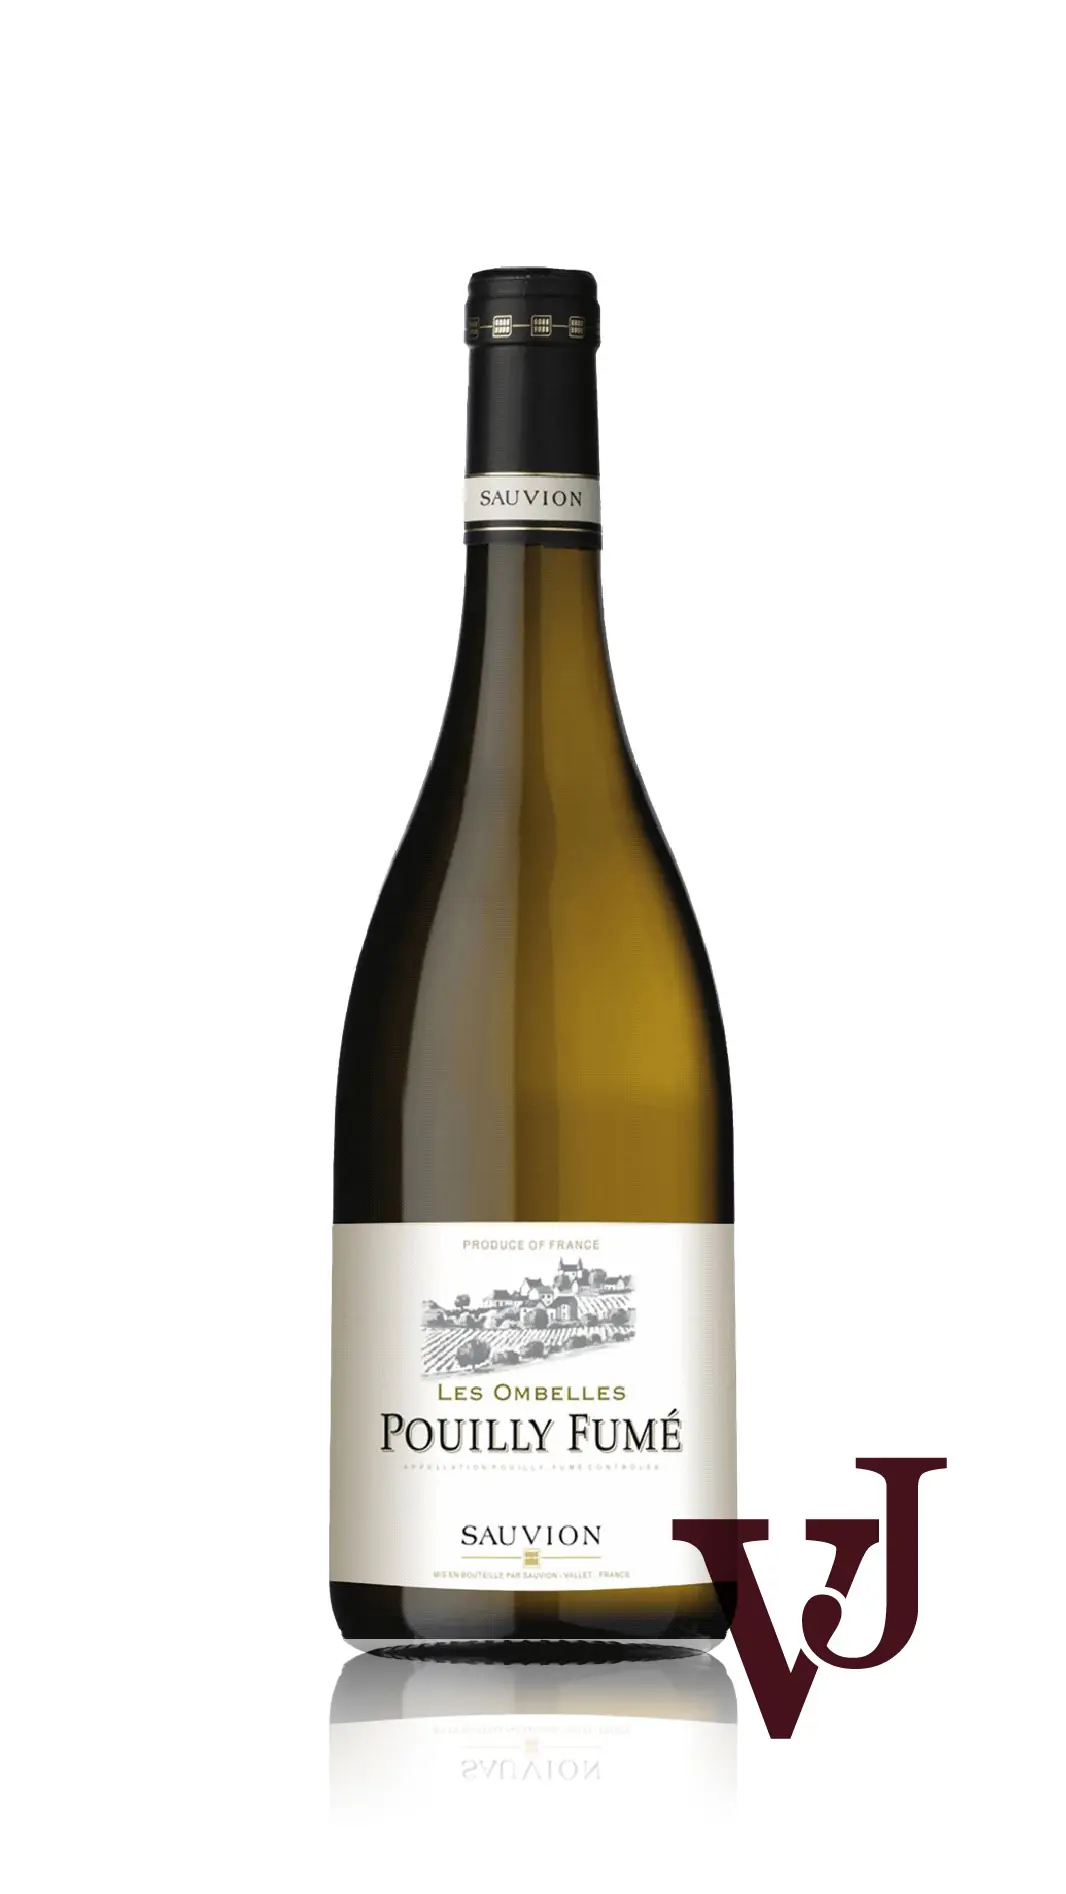 Vitt Vin - Pouilly Fumé Sauvion Les Ombelles artikel nummer 7326801 från producenten Sauvion från området Frankrike - Vinjournalen.se